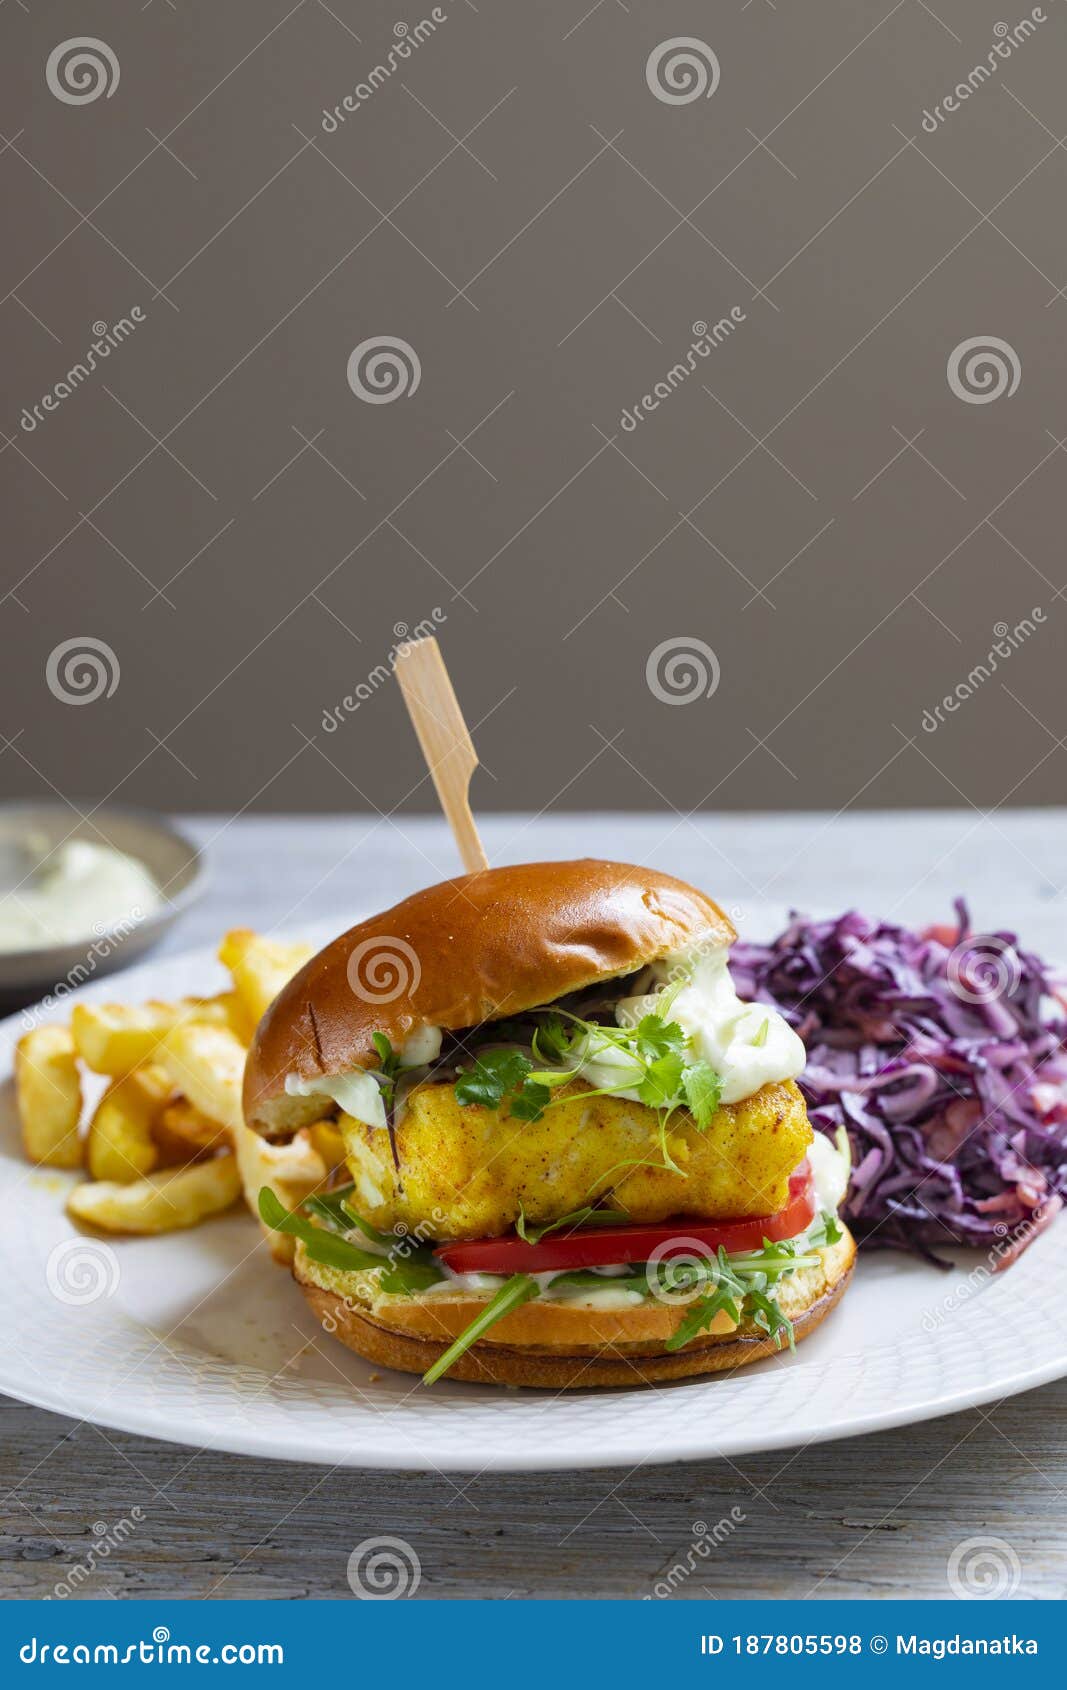 大块鳕鱼汉堡高清美食摄影图片